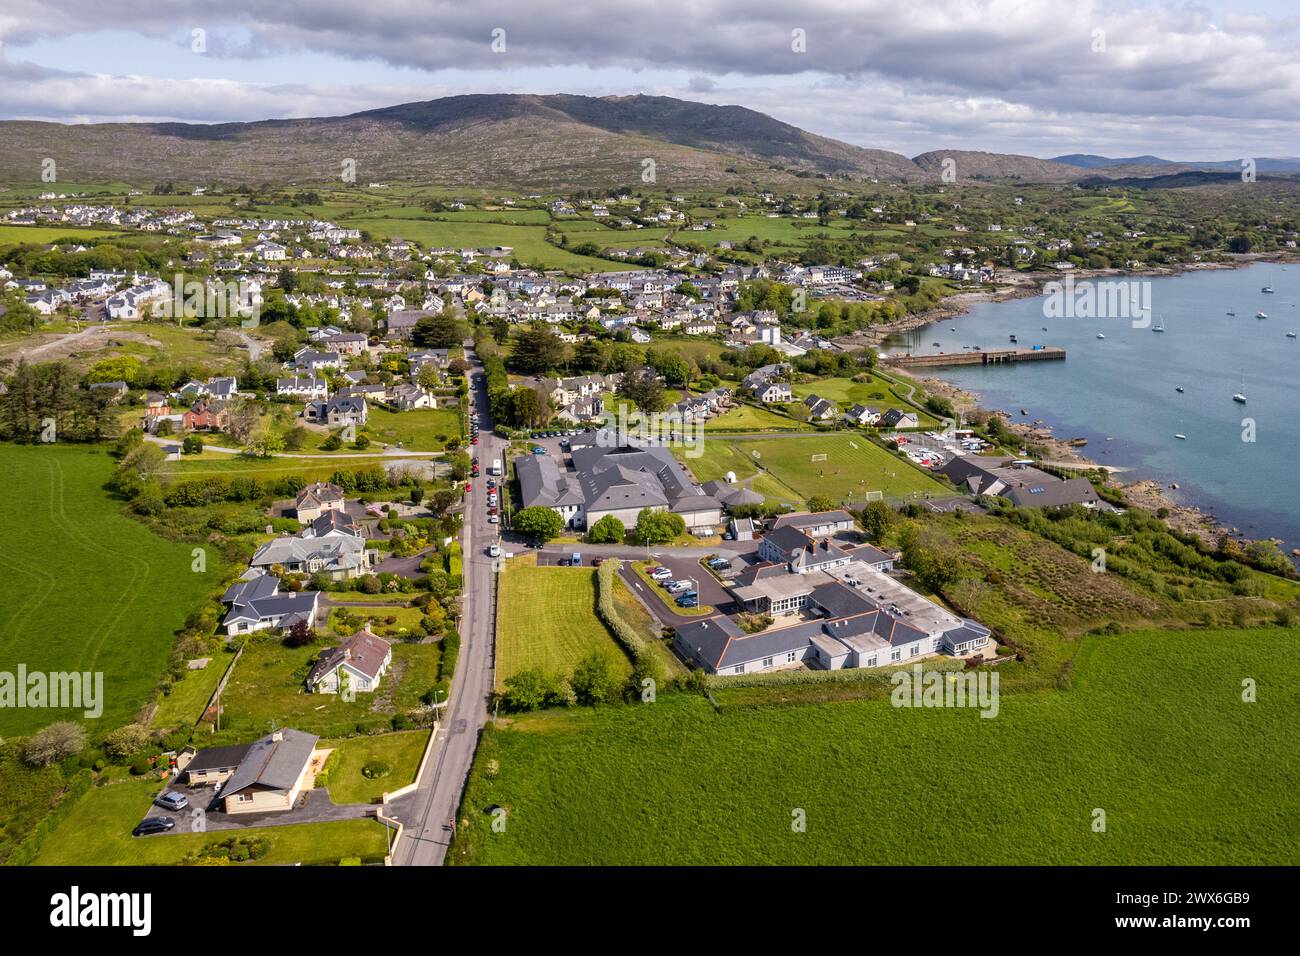 Photo aérienne du village balnéaire de Schull, West Cork, Irlande avec le mont Gabriel en arrière-plan. Banque D'Images